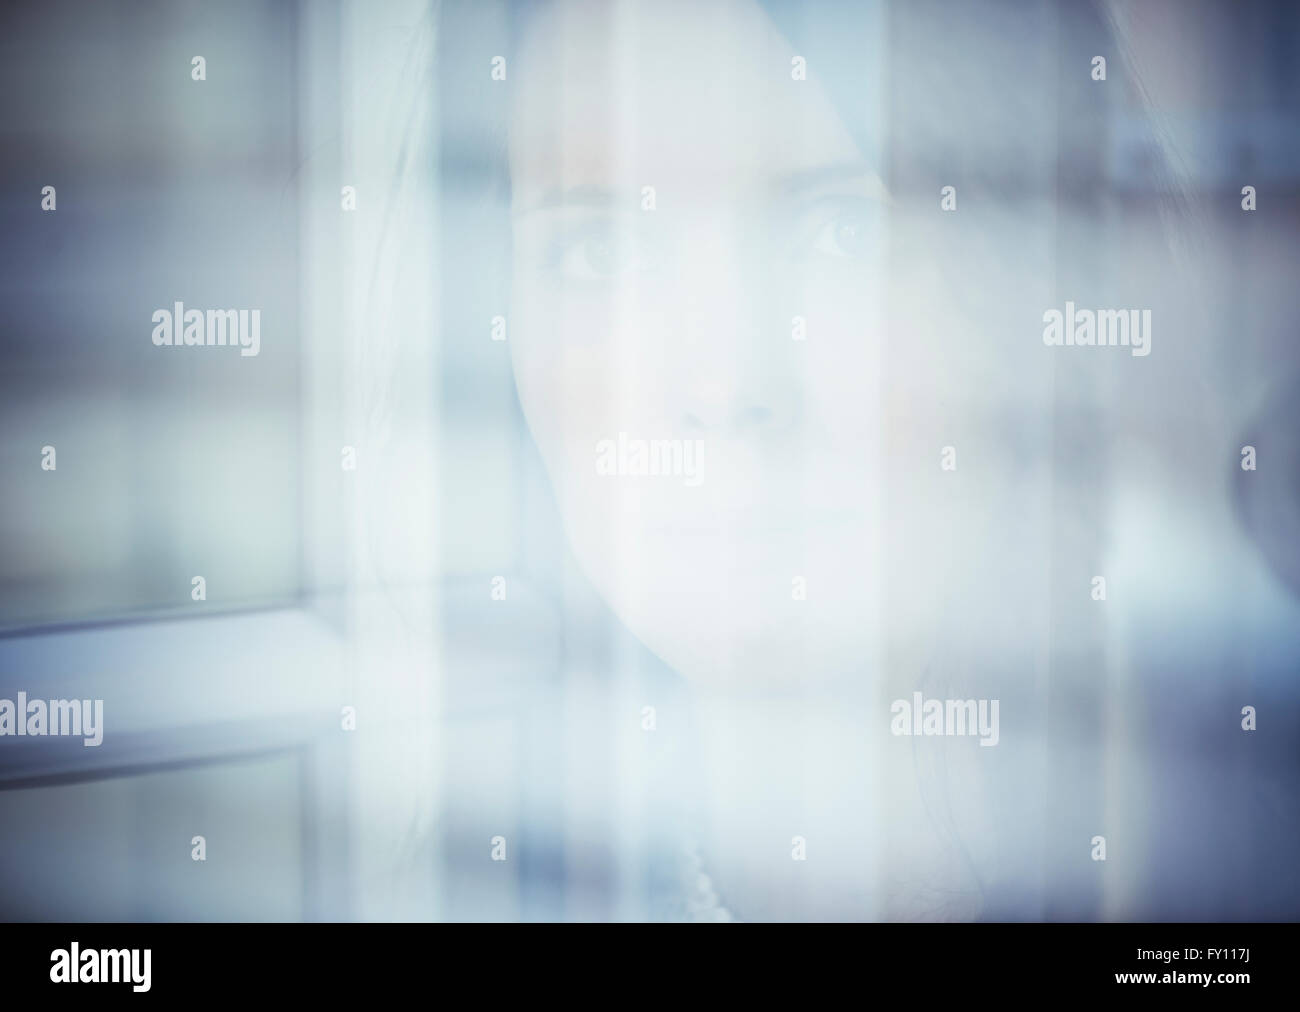 Portrait de femme anxiuos par une fenêtre. Concept de la tristesse, la peur et l'incertitude. Banque D'Images